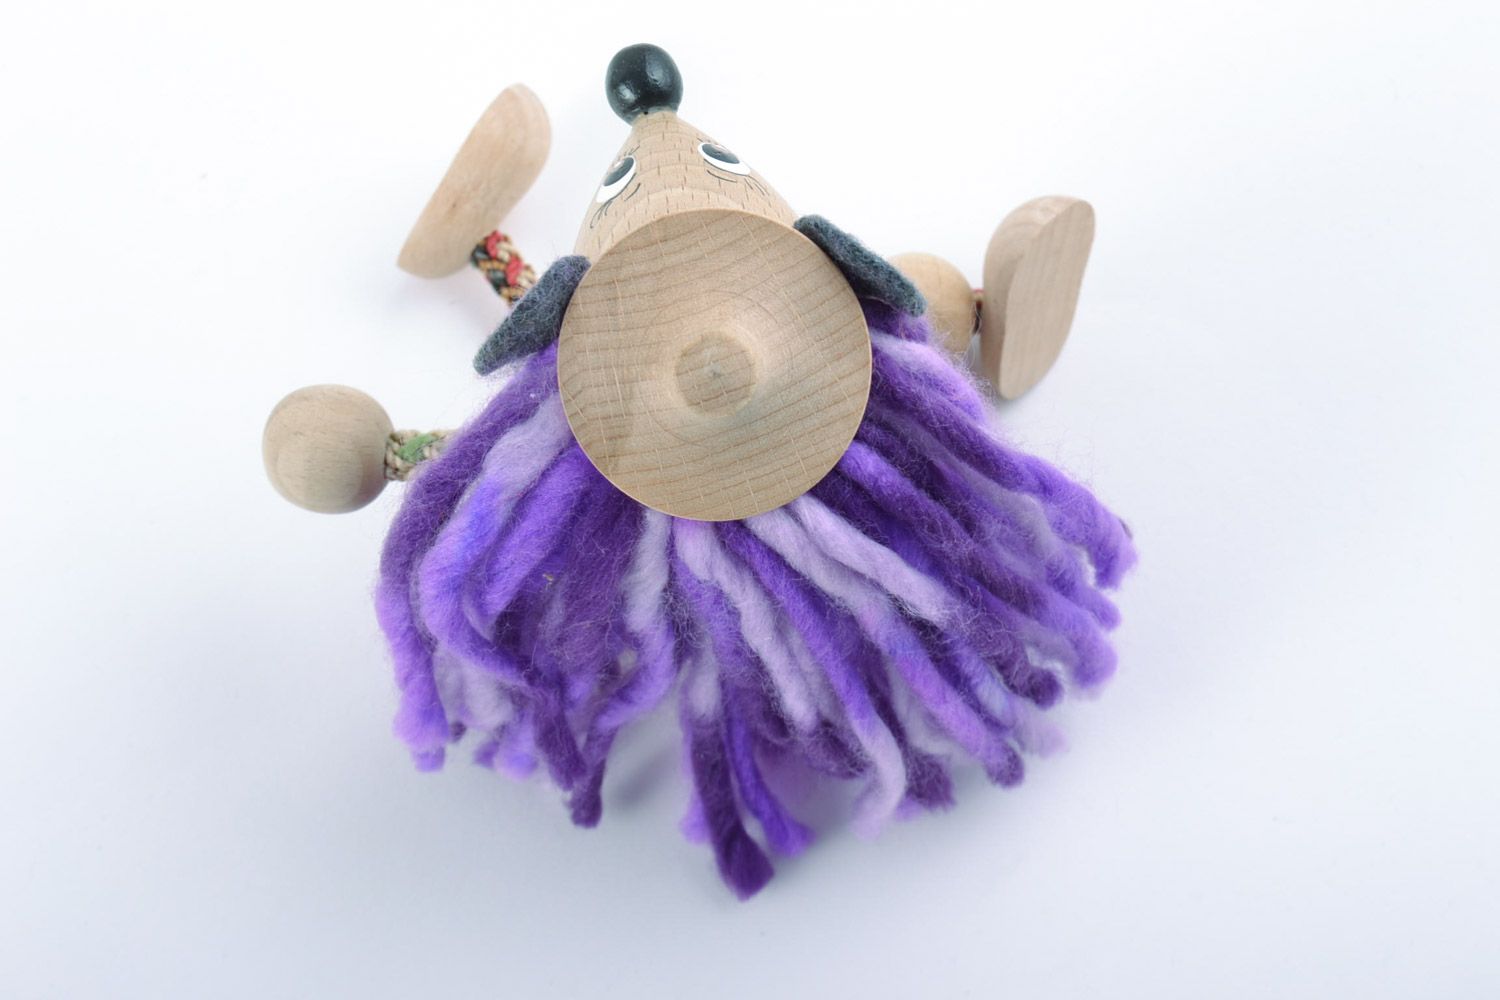 Öko Spielzeug aus Holz Maus mit lila Haaren mit Bemalung für Kinder handmade foto 4